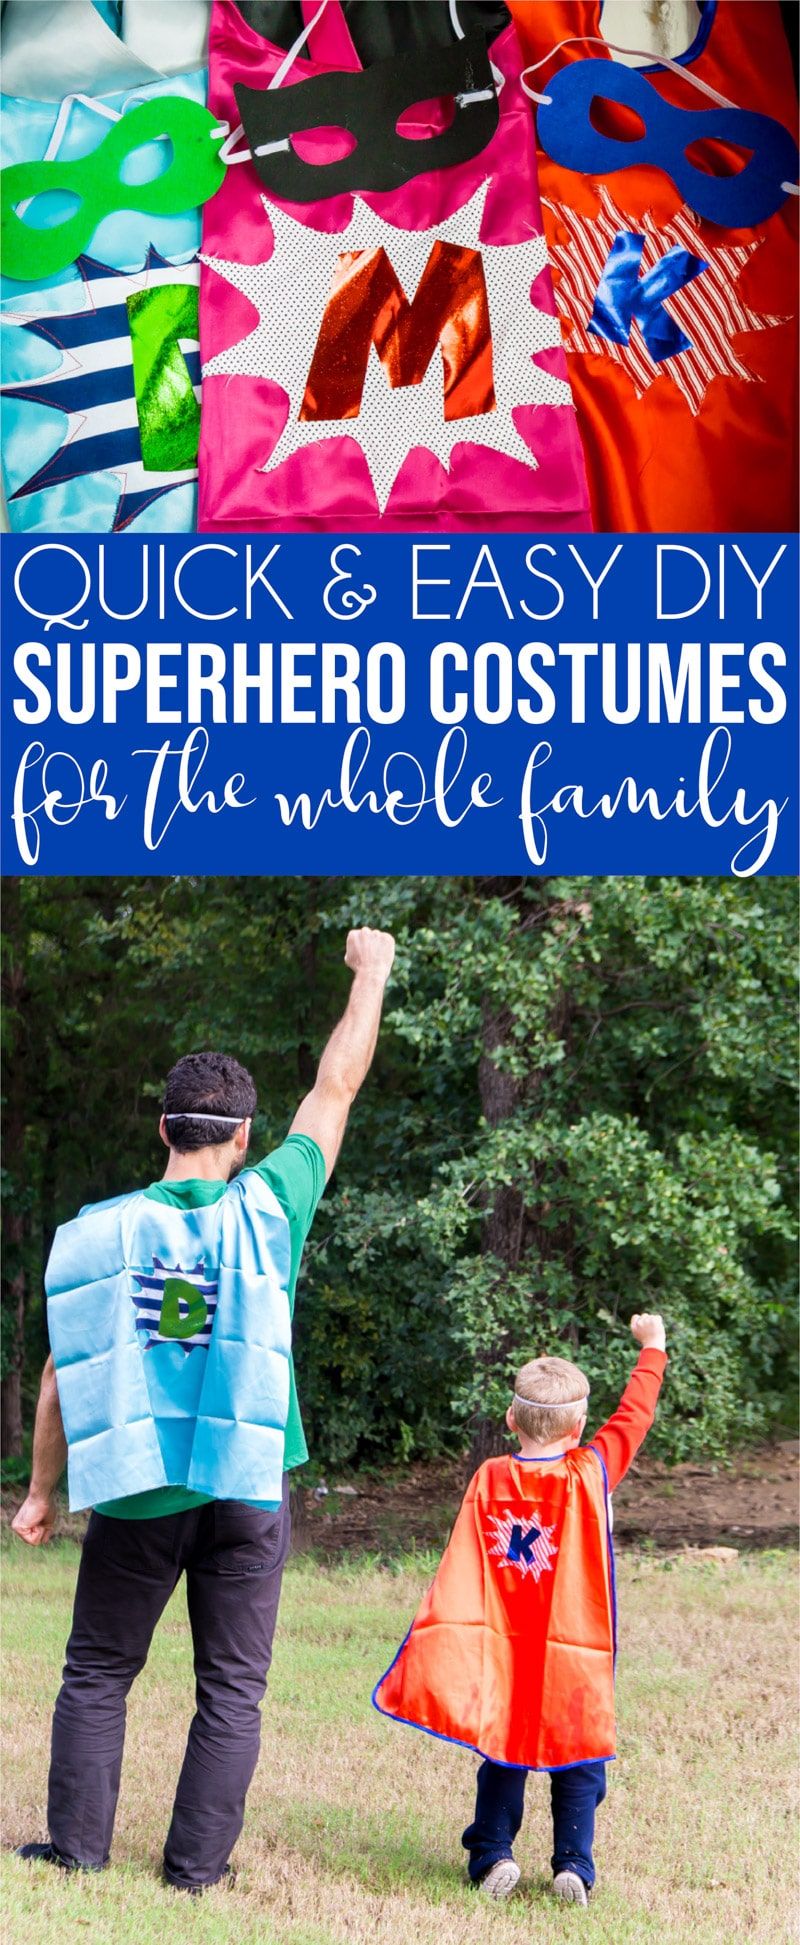 Uma colagem de imagens que mostra ideias para fantasias de super-heróis familiares.